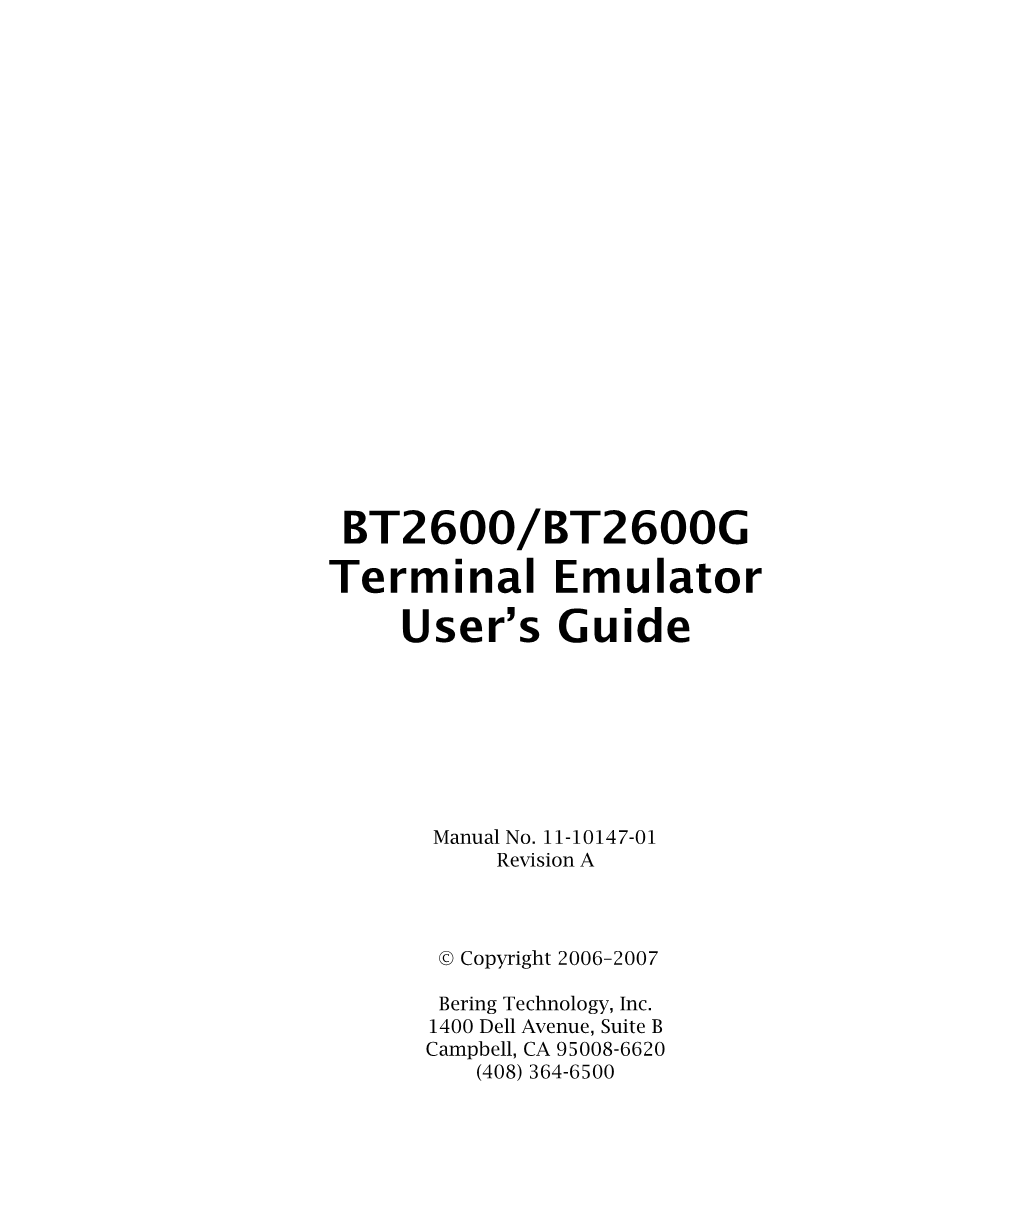 BT2600/BT2600G Terminal Emulator User's Guide